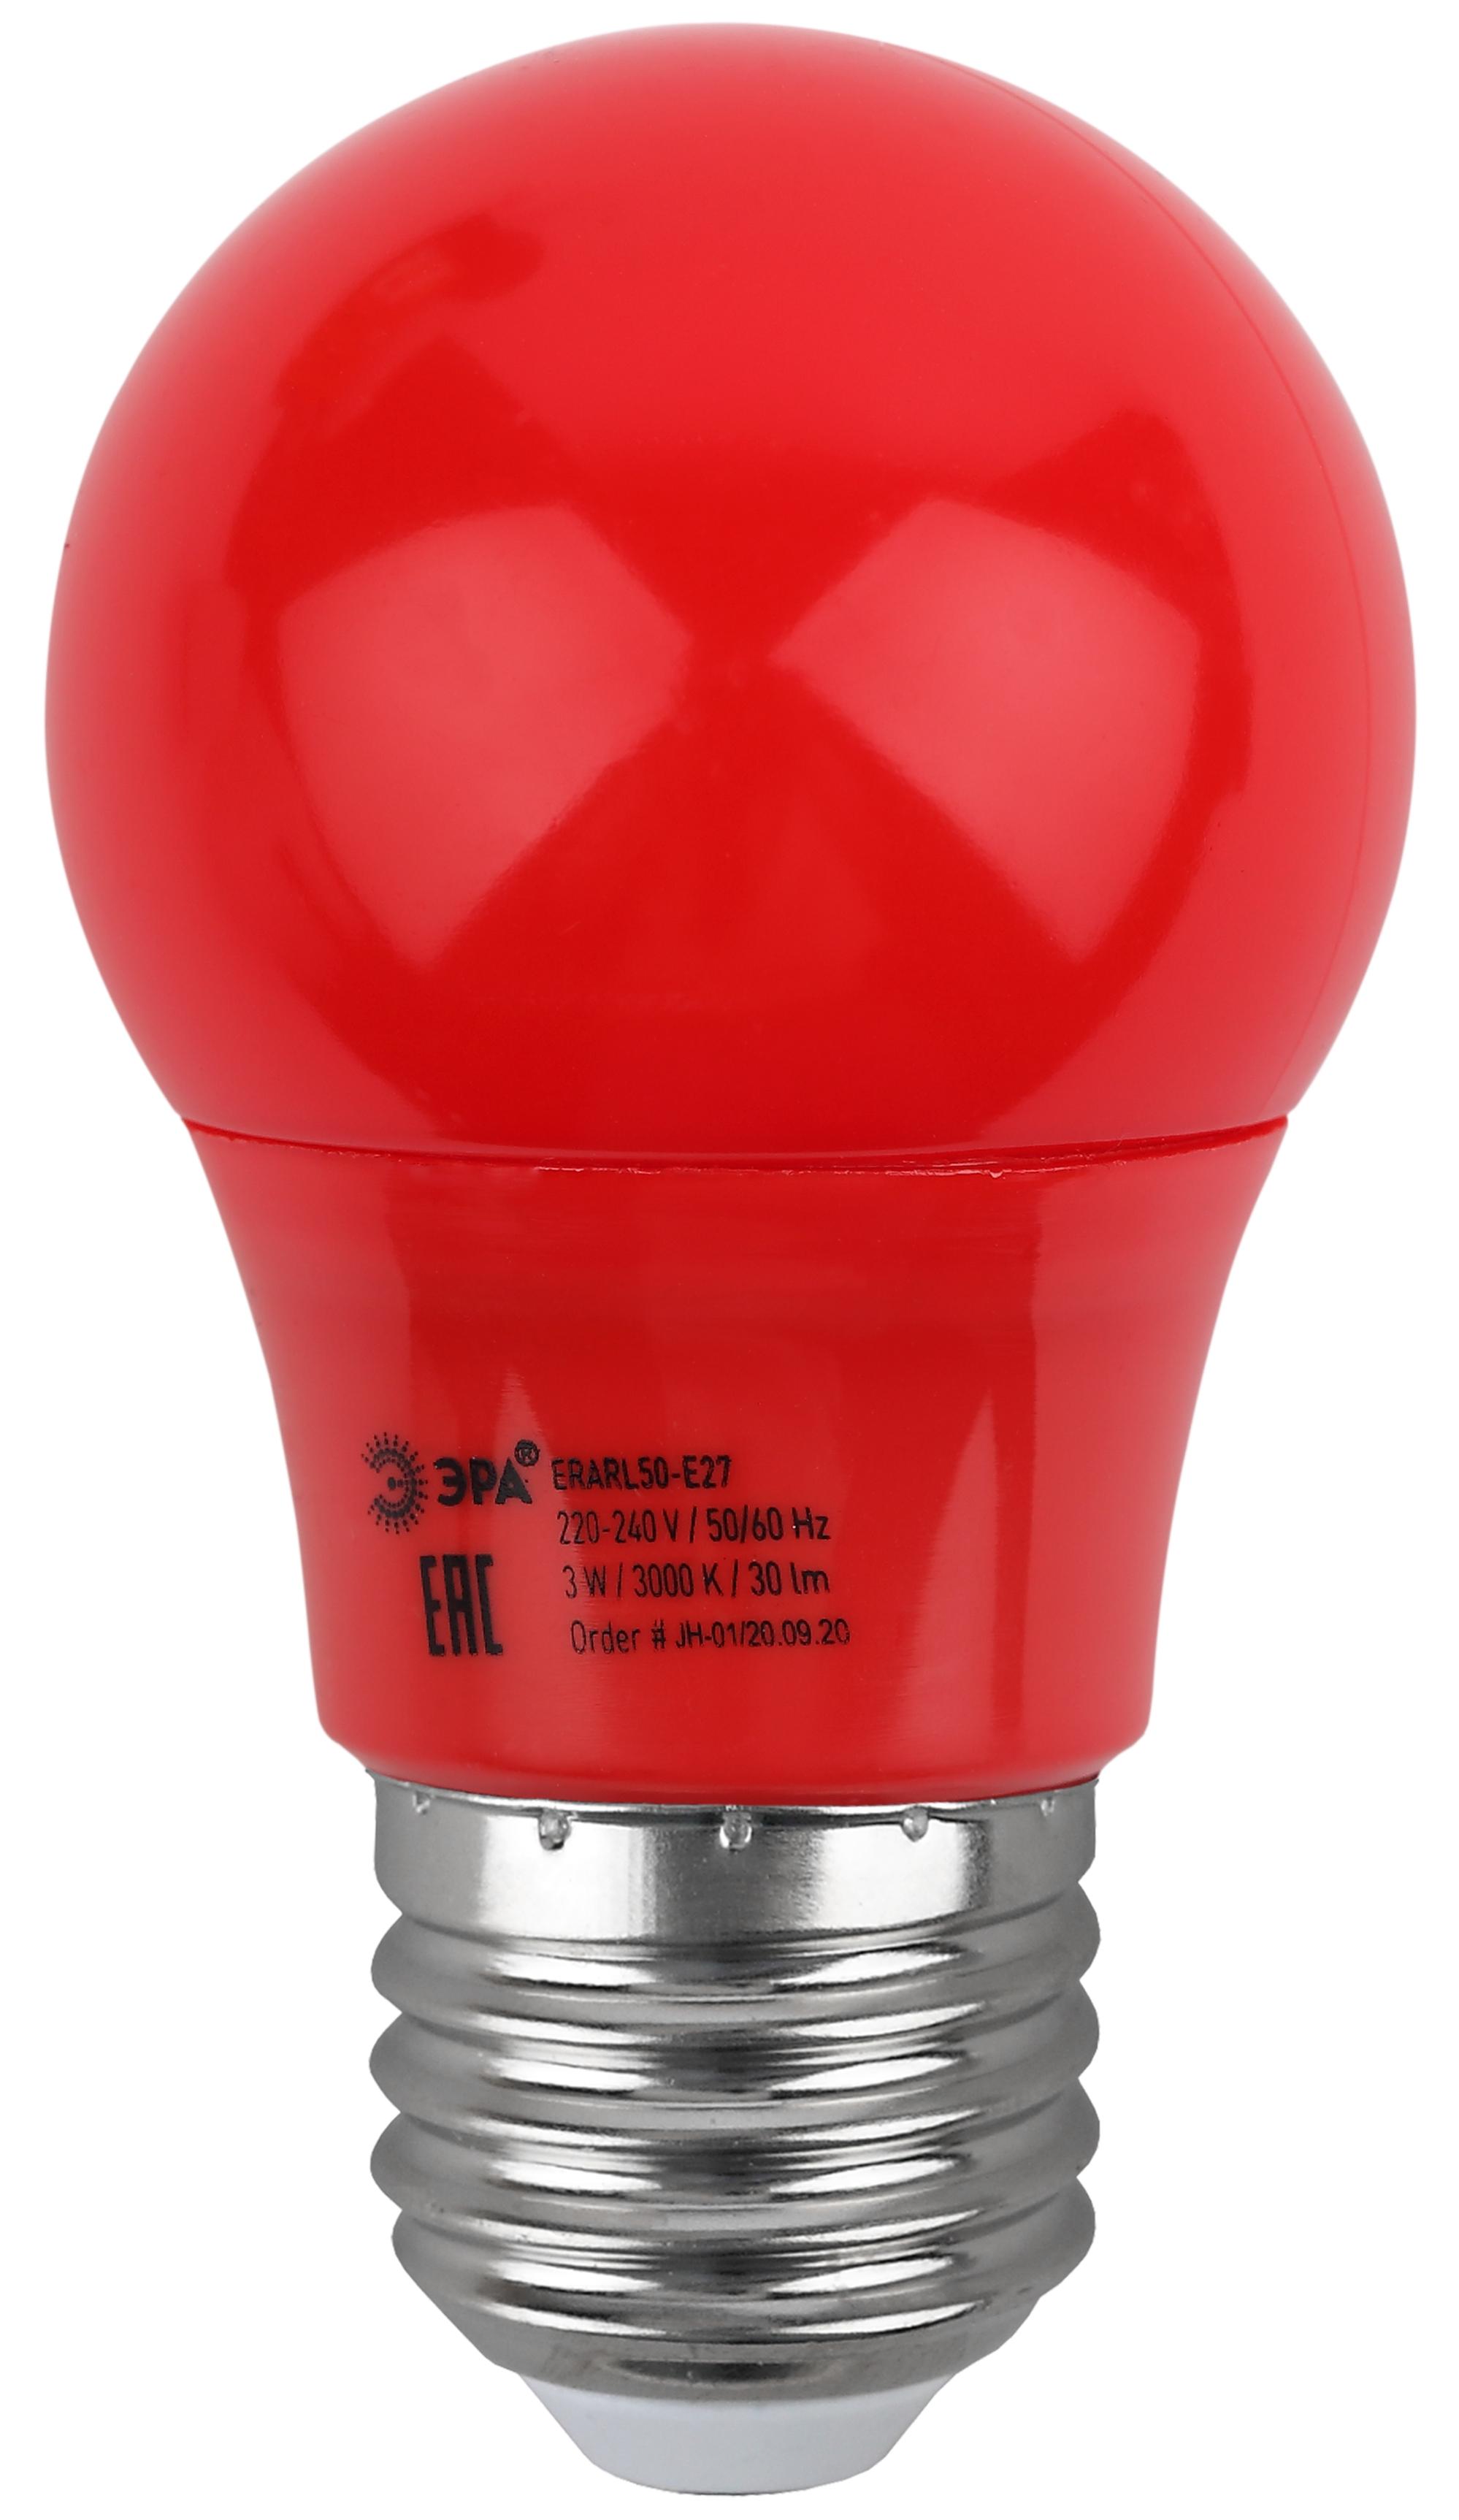 Купить Лампа светодиодная Эра STD ERARL50-E27 груша для белт-лайт красный